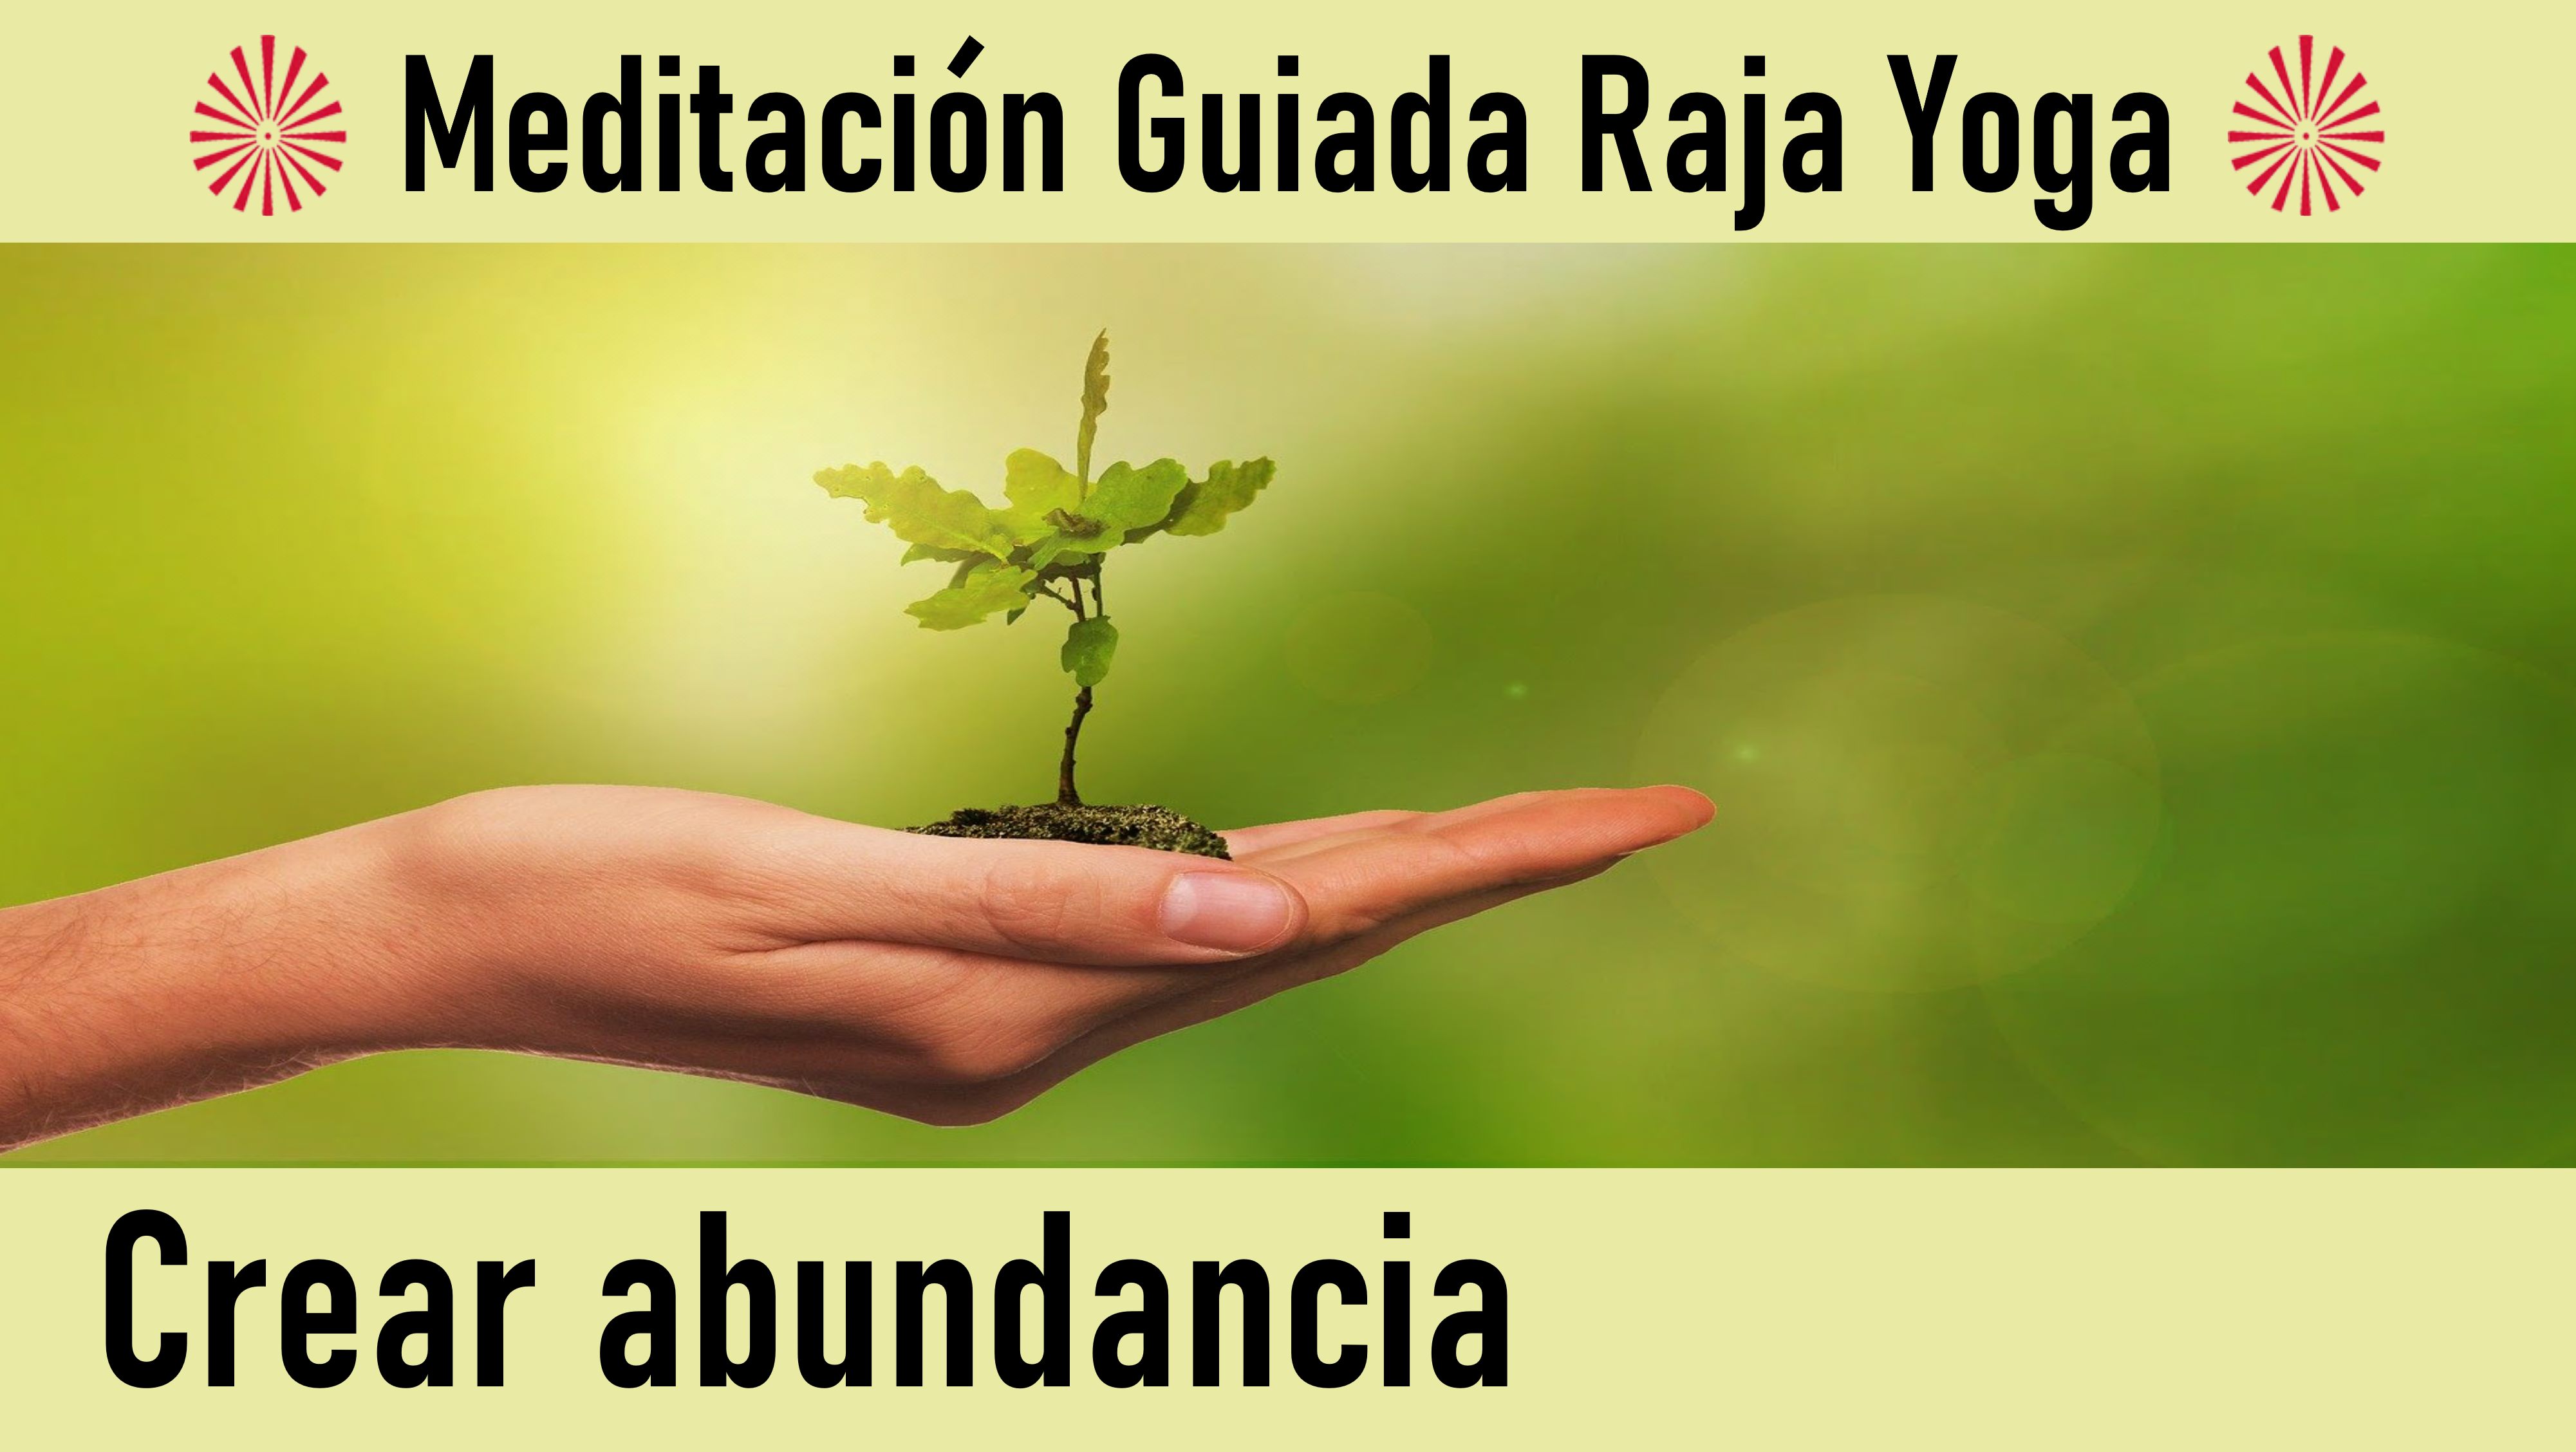 Meditación Raja Yoga: Crear abundancia (30 Mayo 2020) On-line desde Valencia